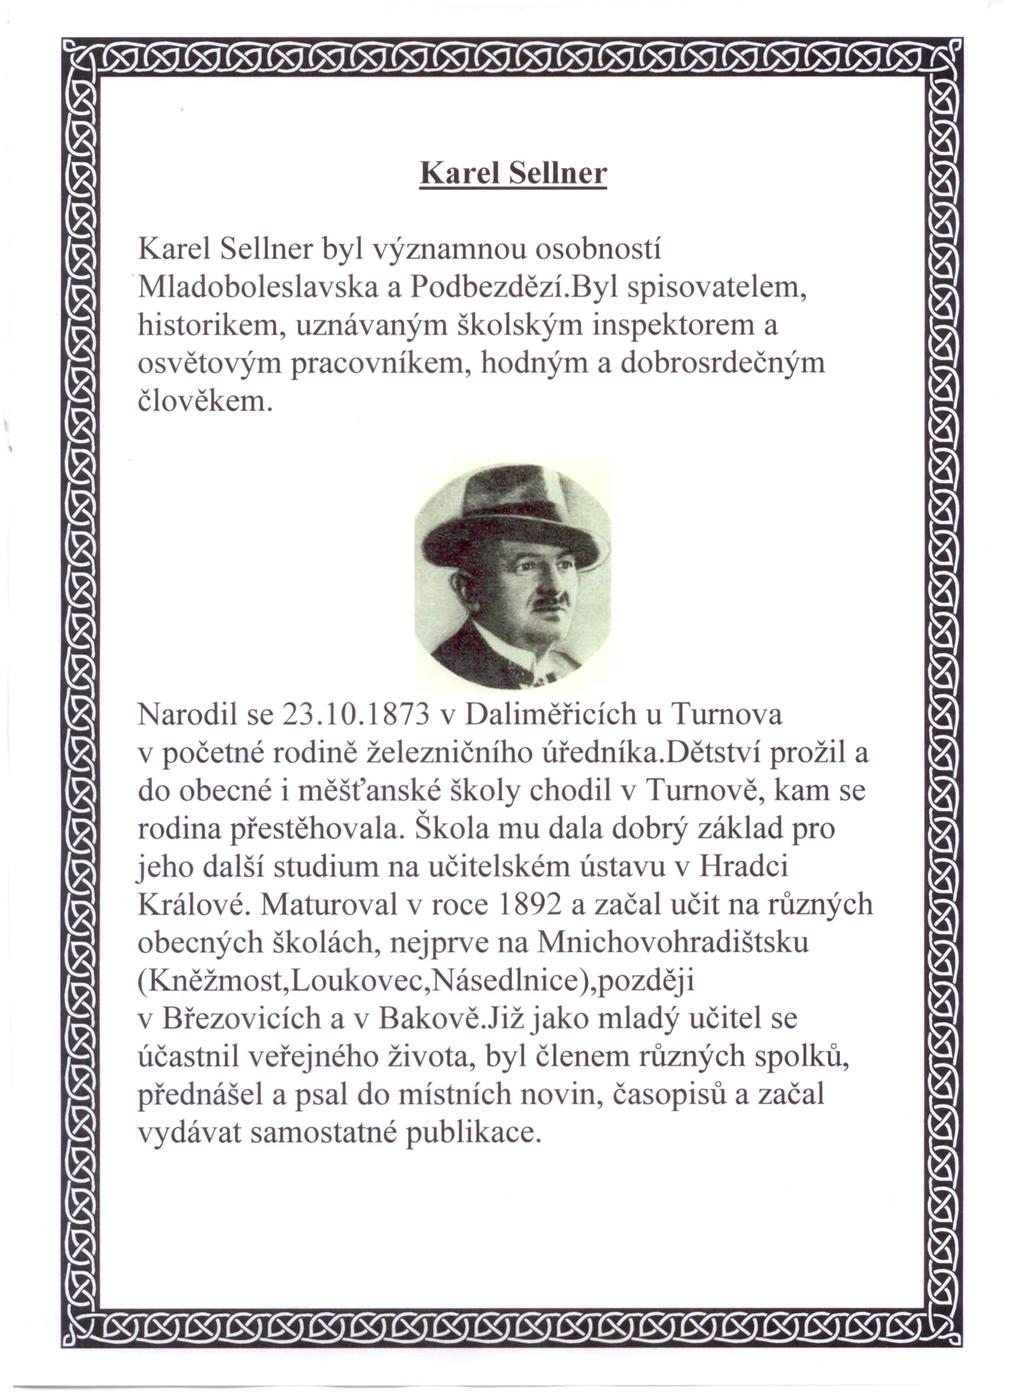 Karel Sellner Karel Sellner byl ýznamnou osobností Mladoboleslaska a Podbezdězí.Byl spisoatelem, historikem, uznáaným školským inspektorem a osětoým praconíkem, hodným a dobrosrdečným čloěkem.